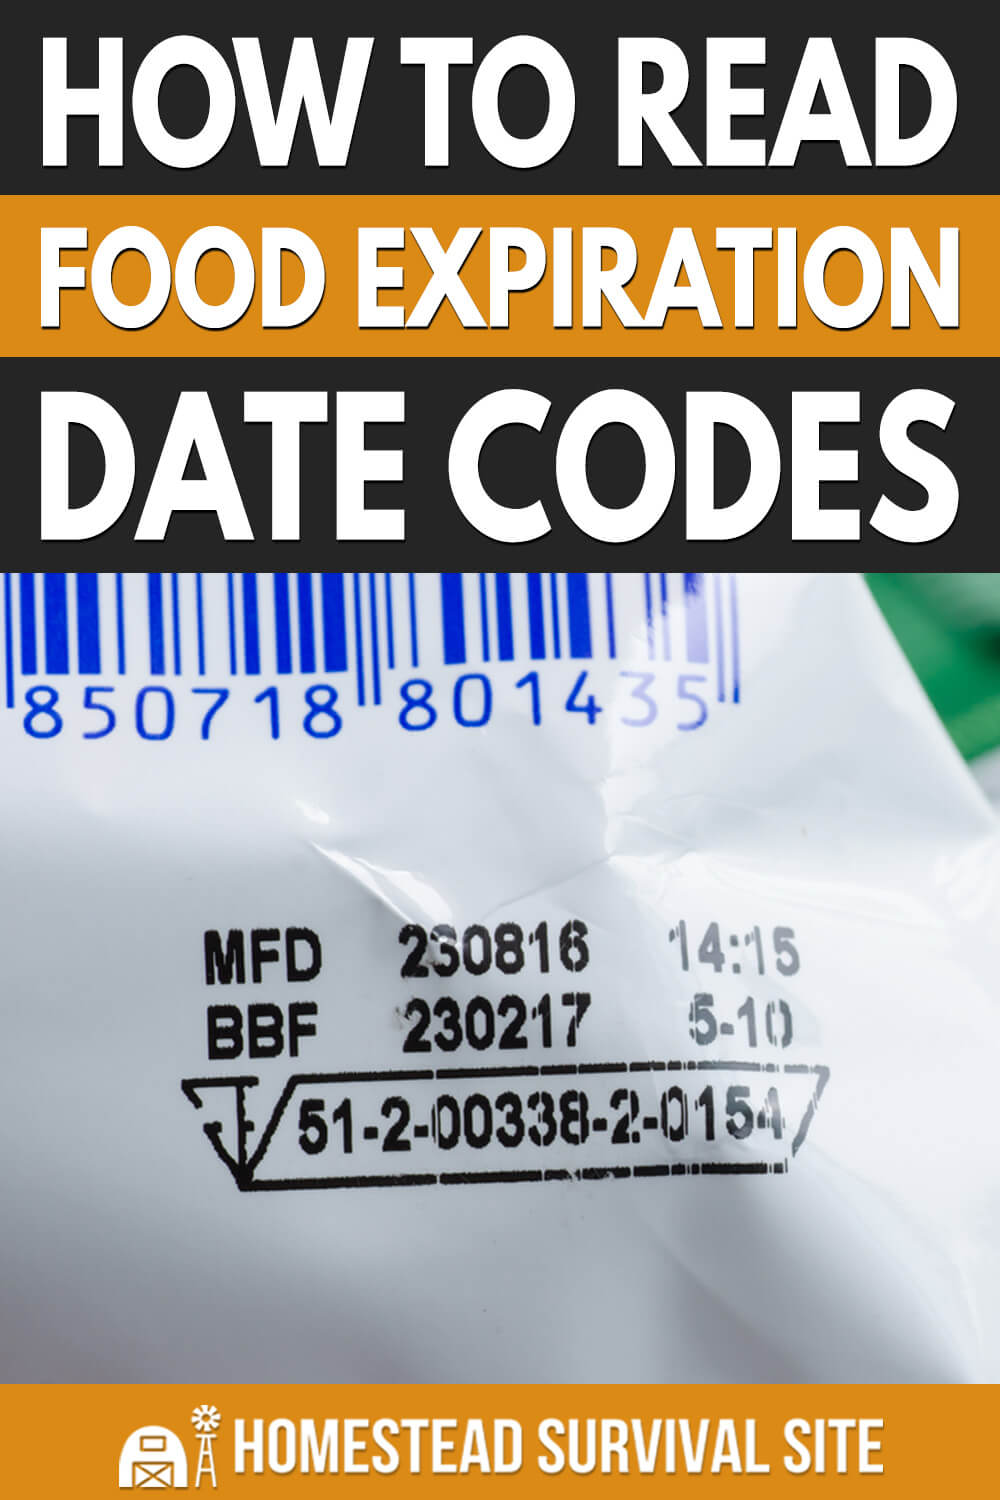 Do food expiration dates matter?